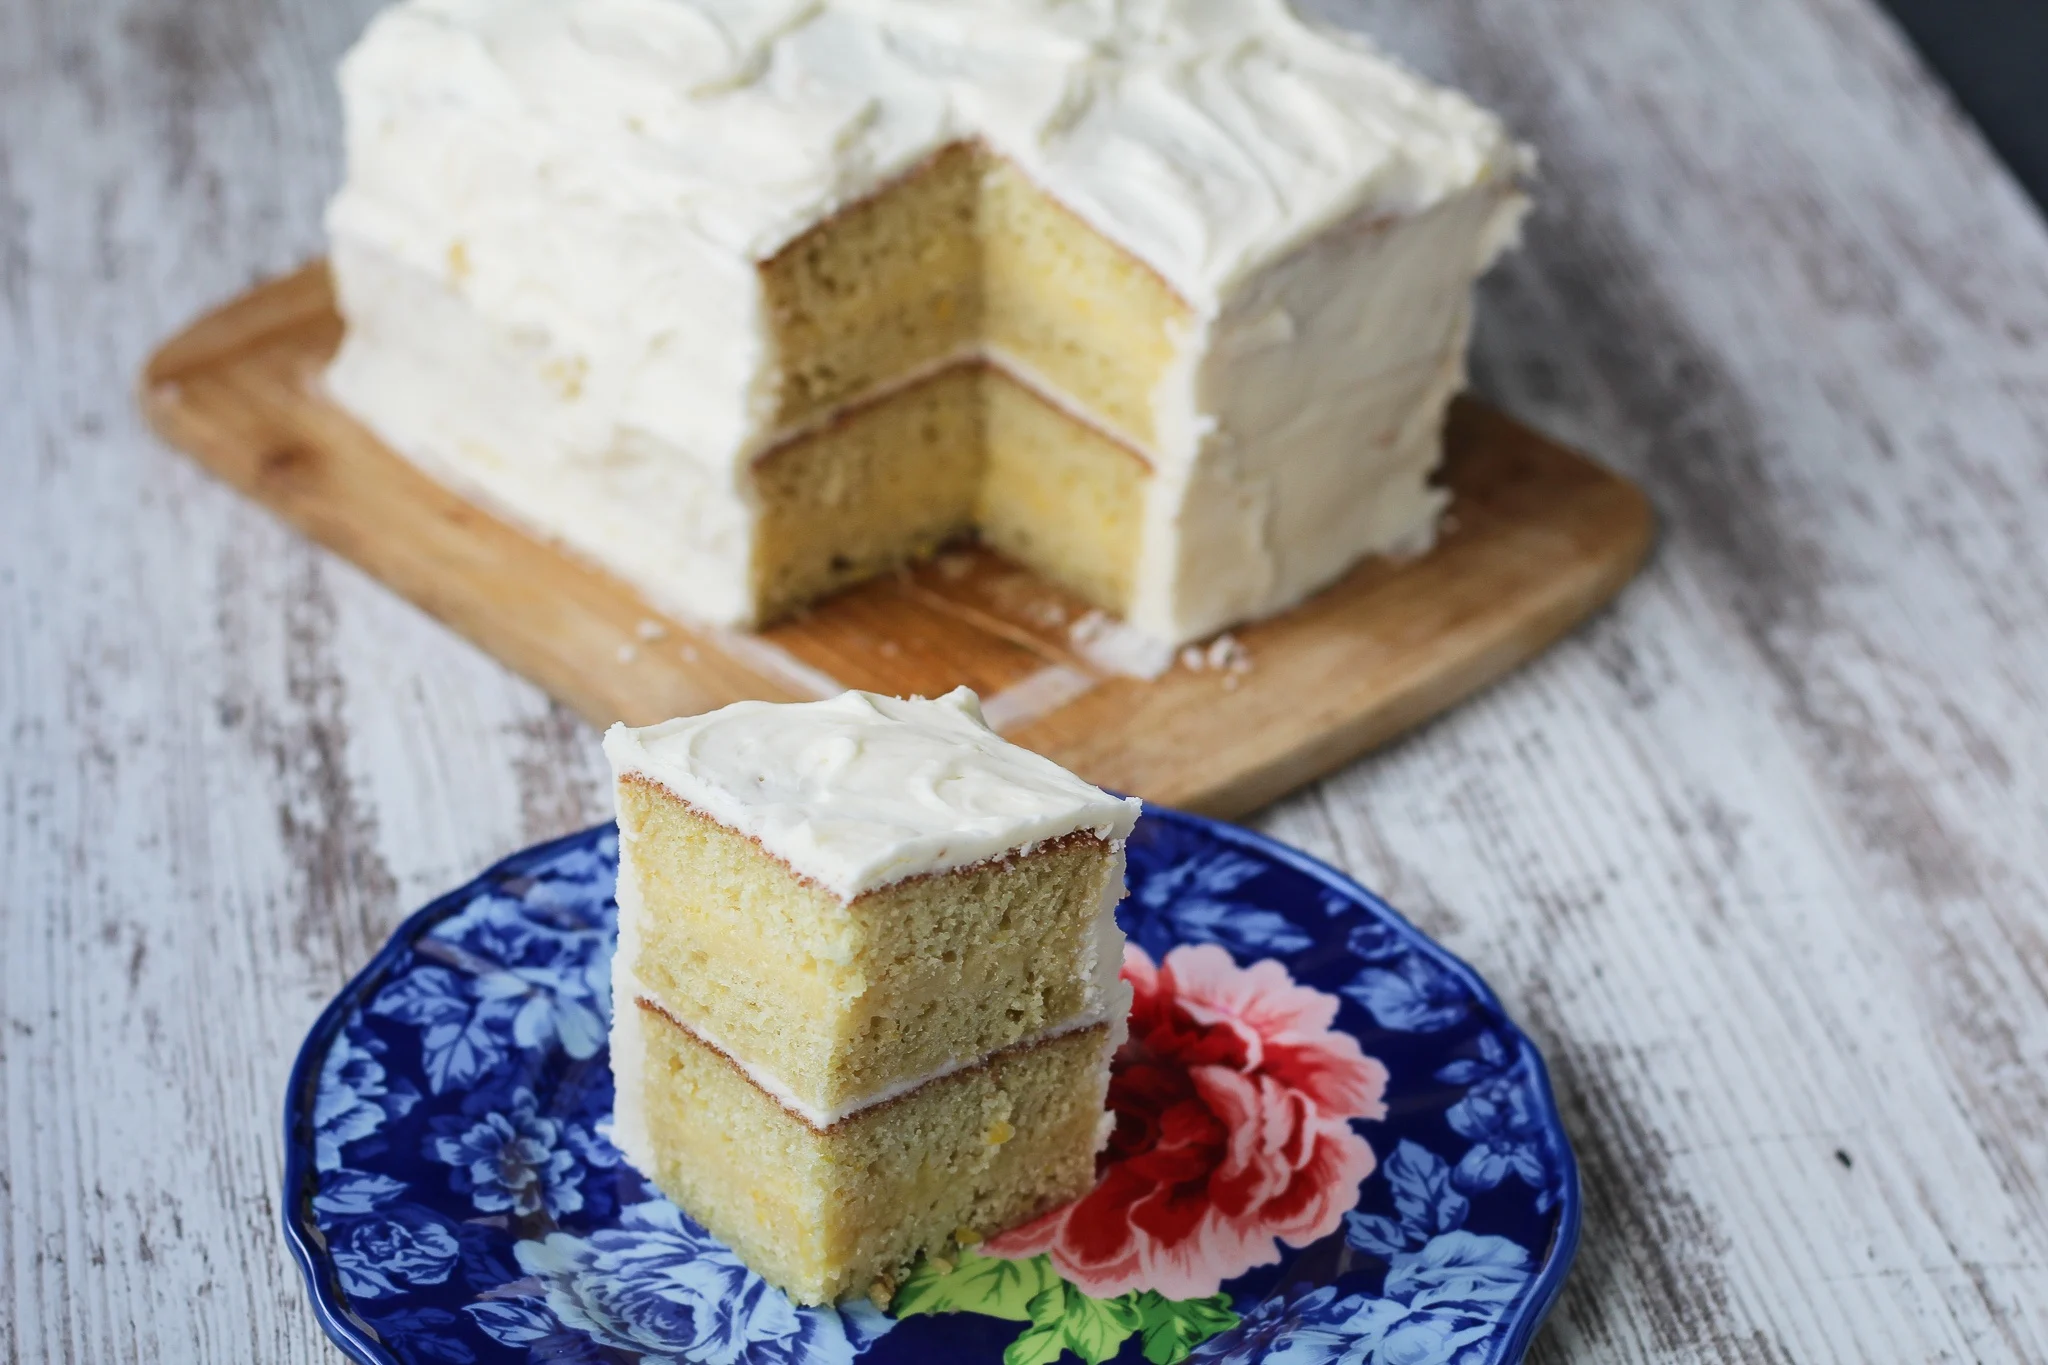 Lemon Buttercream Cake with Lemon Curd Filling